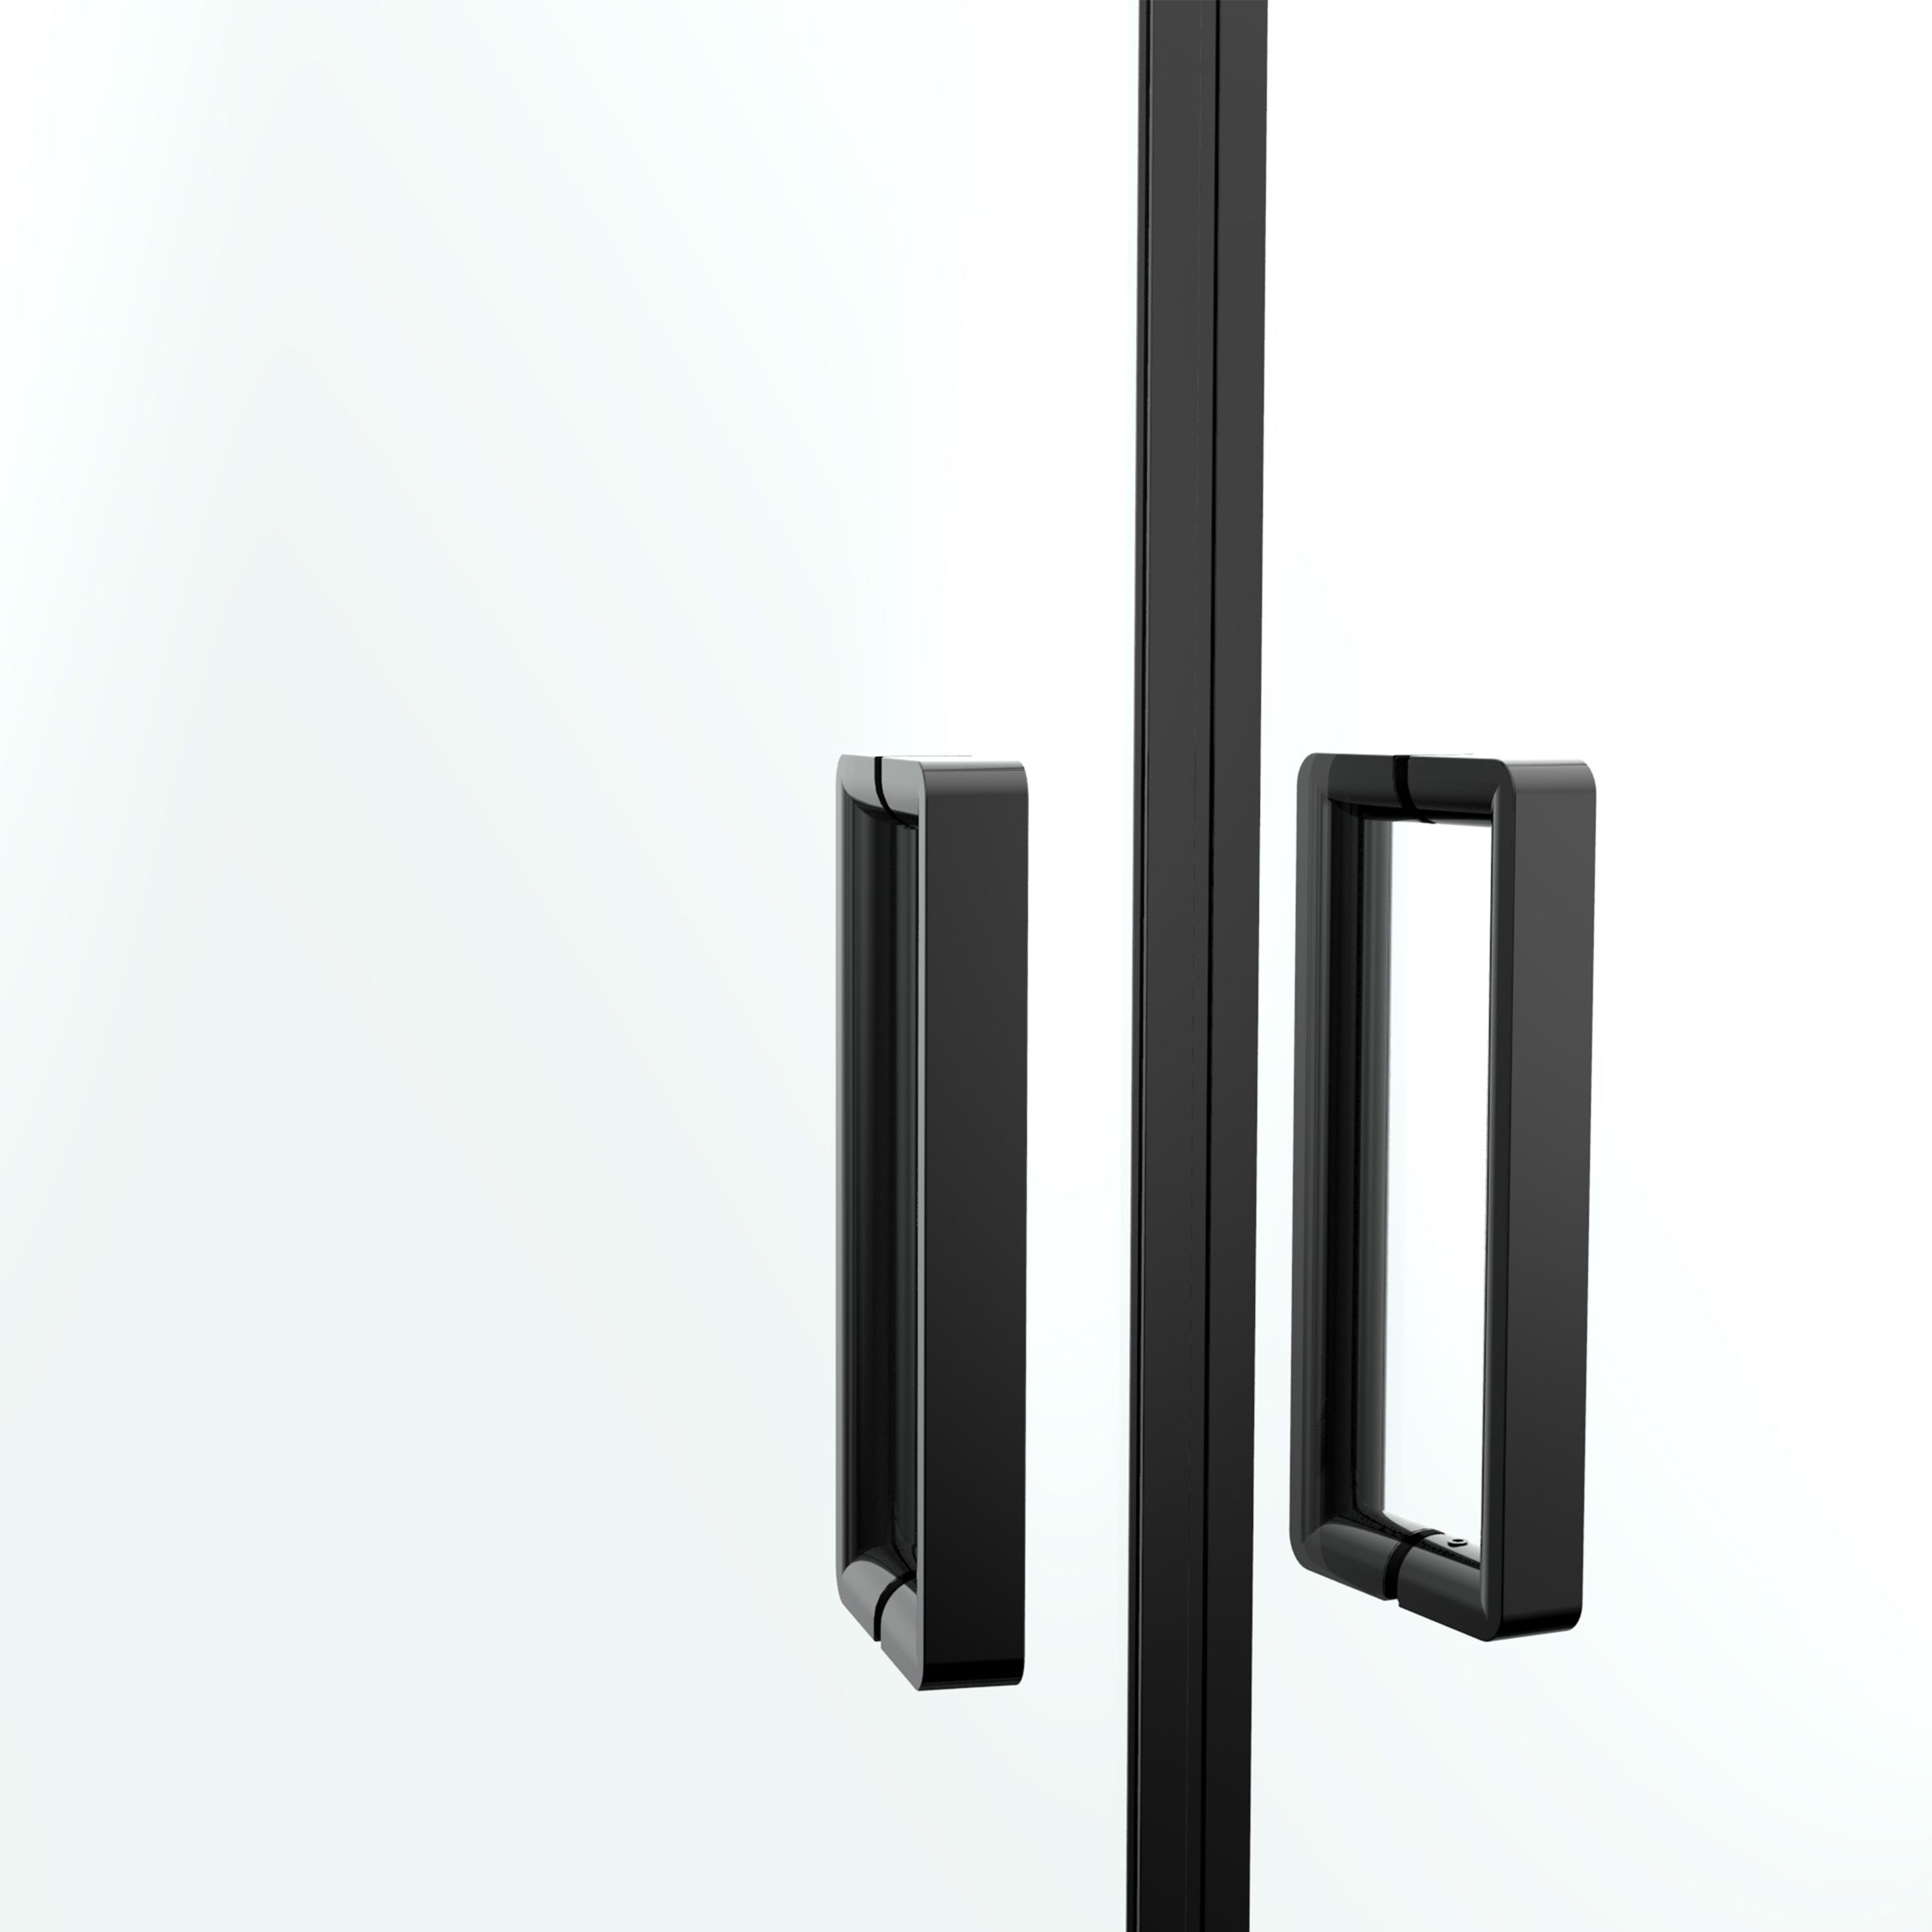 GoodHome Ledava Clear glass Quadrant Shower enclosure - Corner entry double sliding door (W)90cm (D)90cm